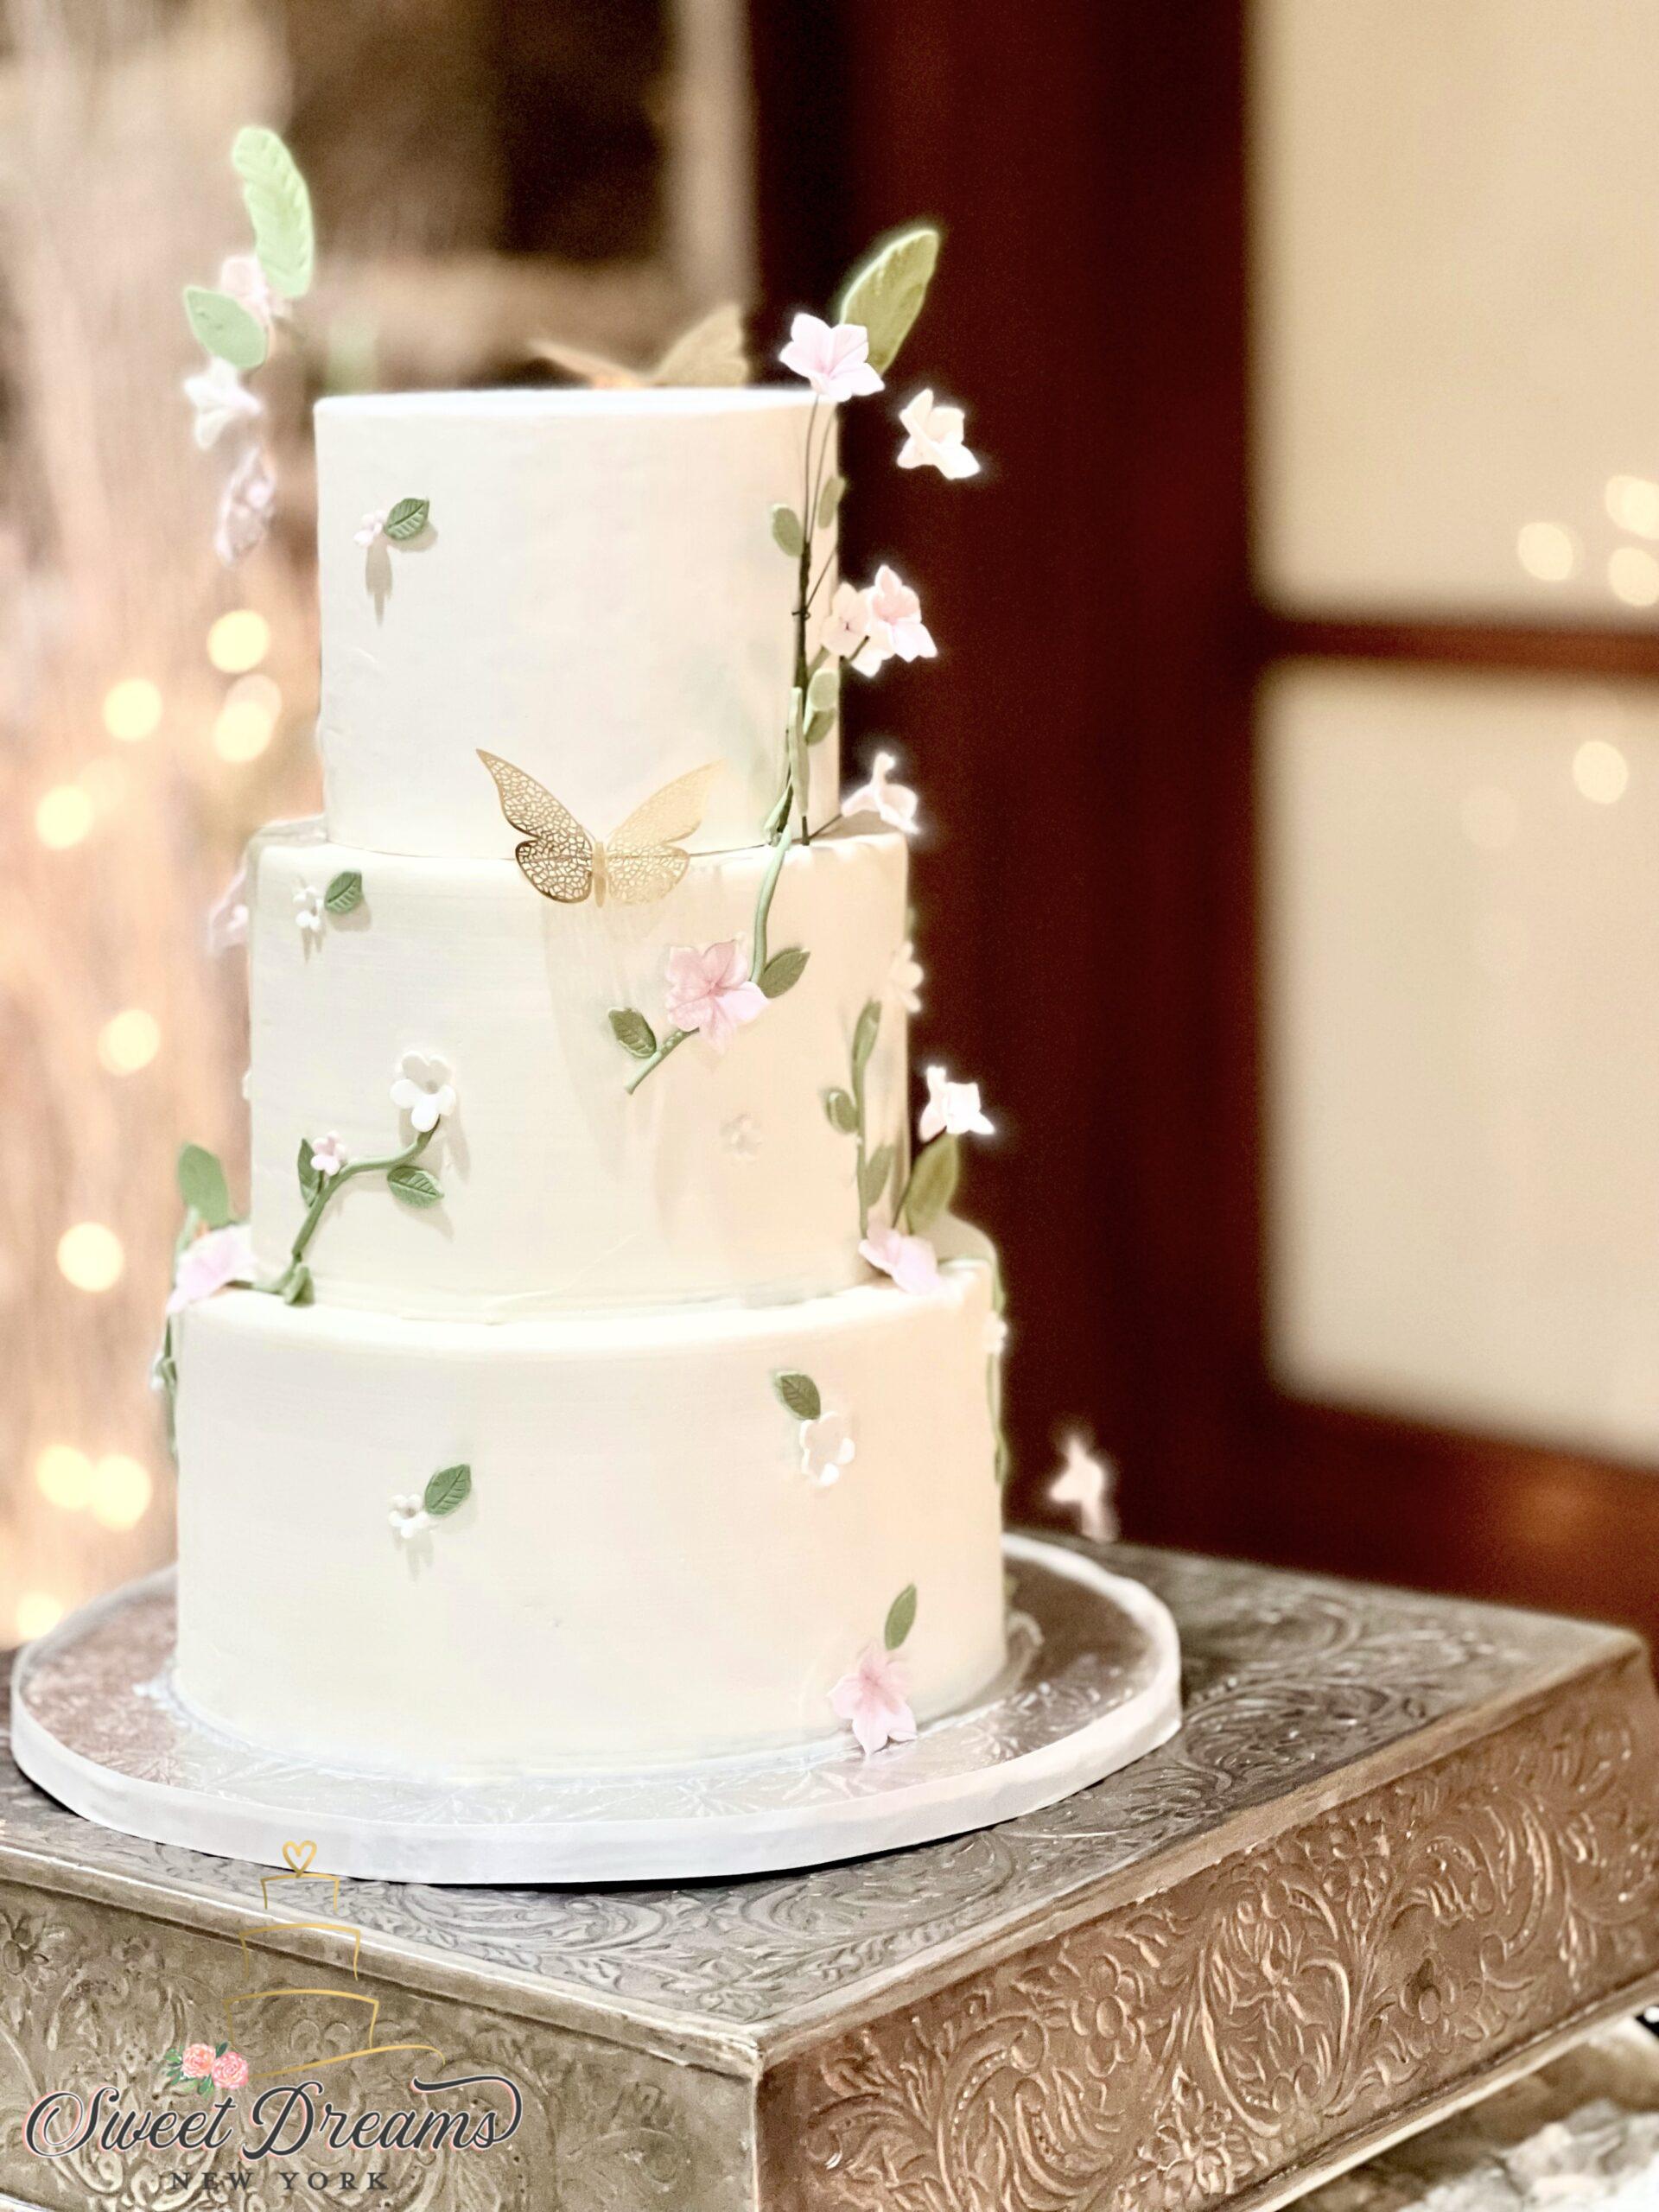 Elegant wedding cake ideas NYC Long Island Sweet Dreams NY Bridal Shower cake